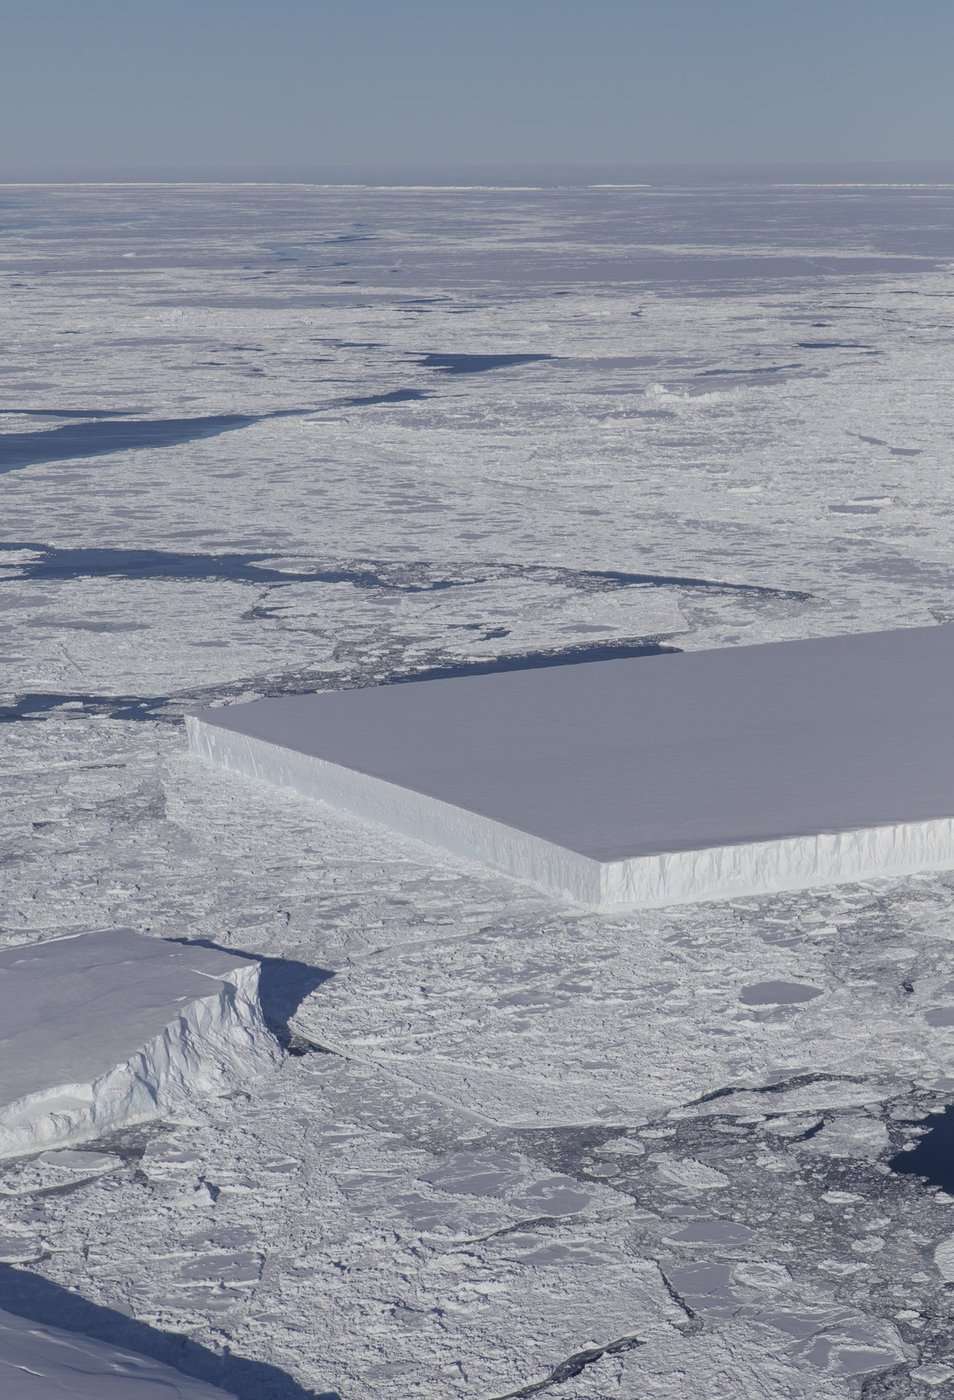 Γεωμετρικό παγόβουνο σαν γιγάντιο παγάκι φωτογράφησε η NASA